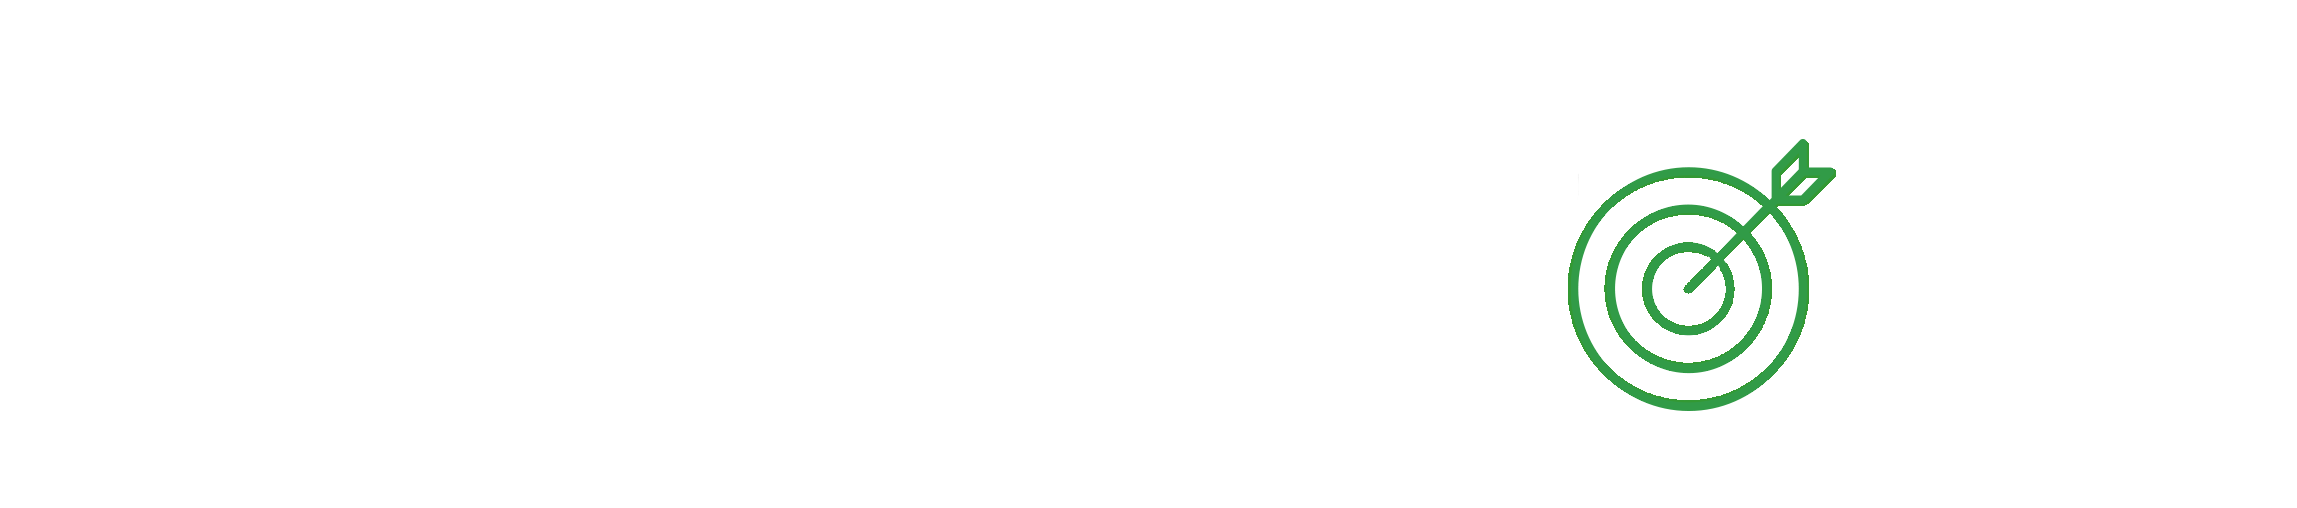 ownerpoint-logo-fullsize-white-darkbg